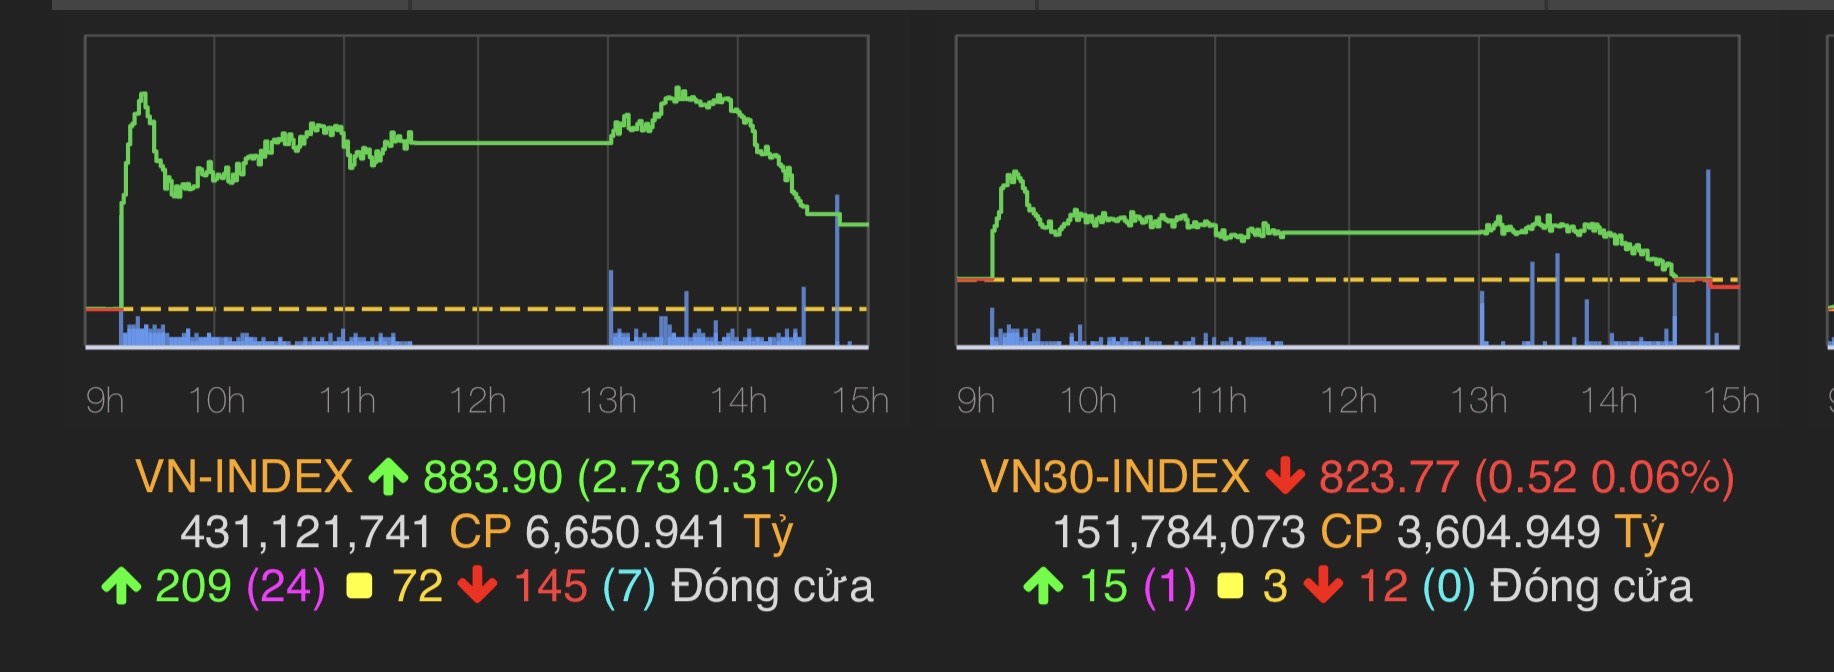 VN-Index tăng 2,73 điểm (0,31%) lên 883,9 điểm.